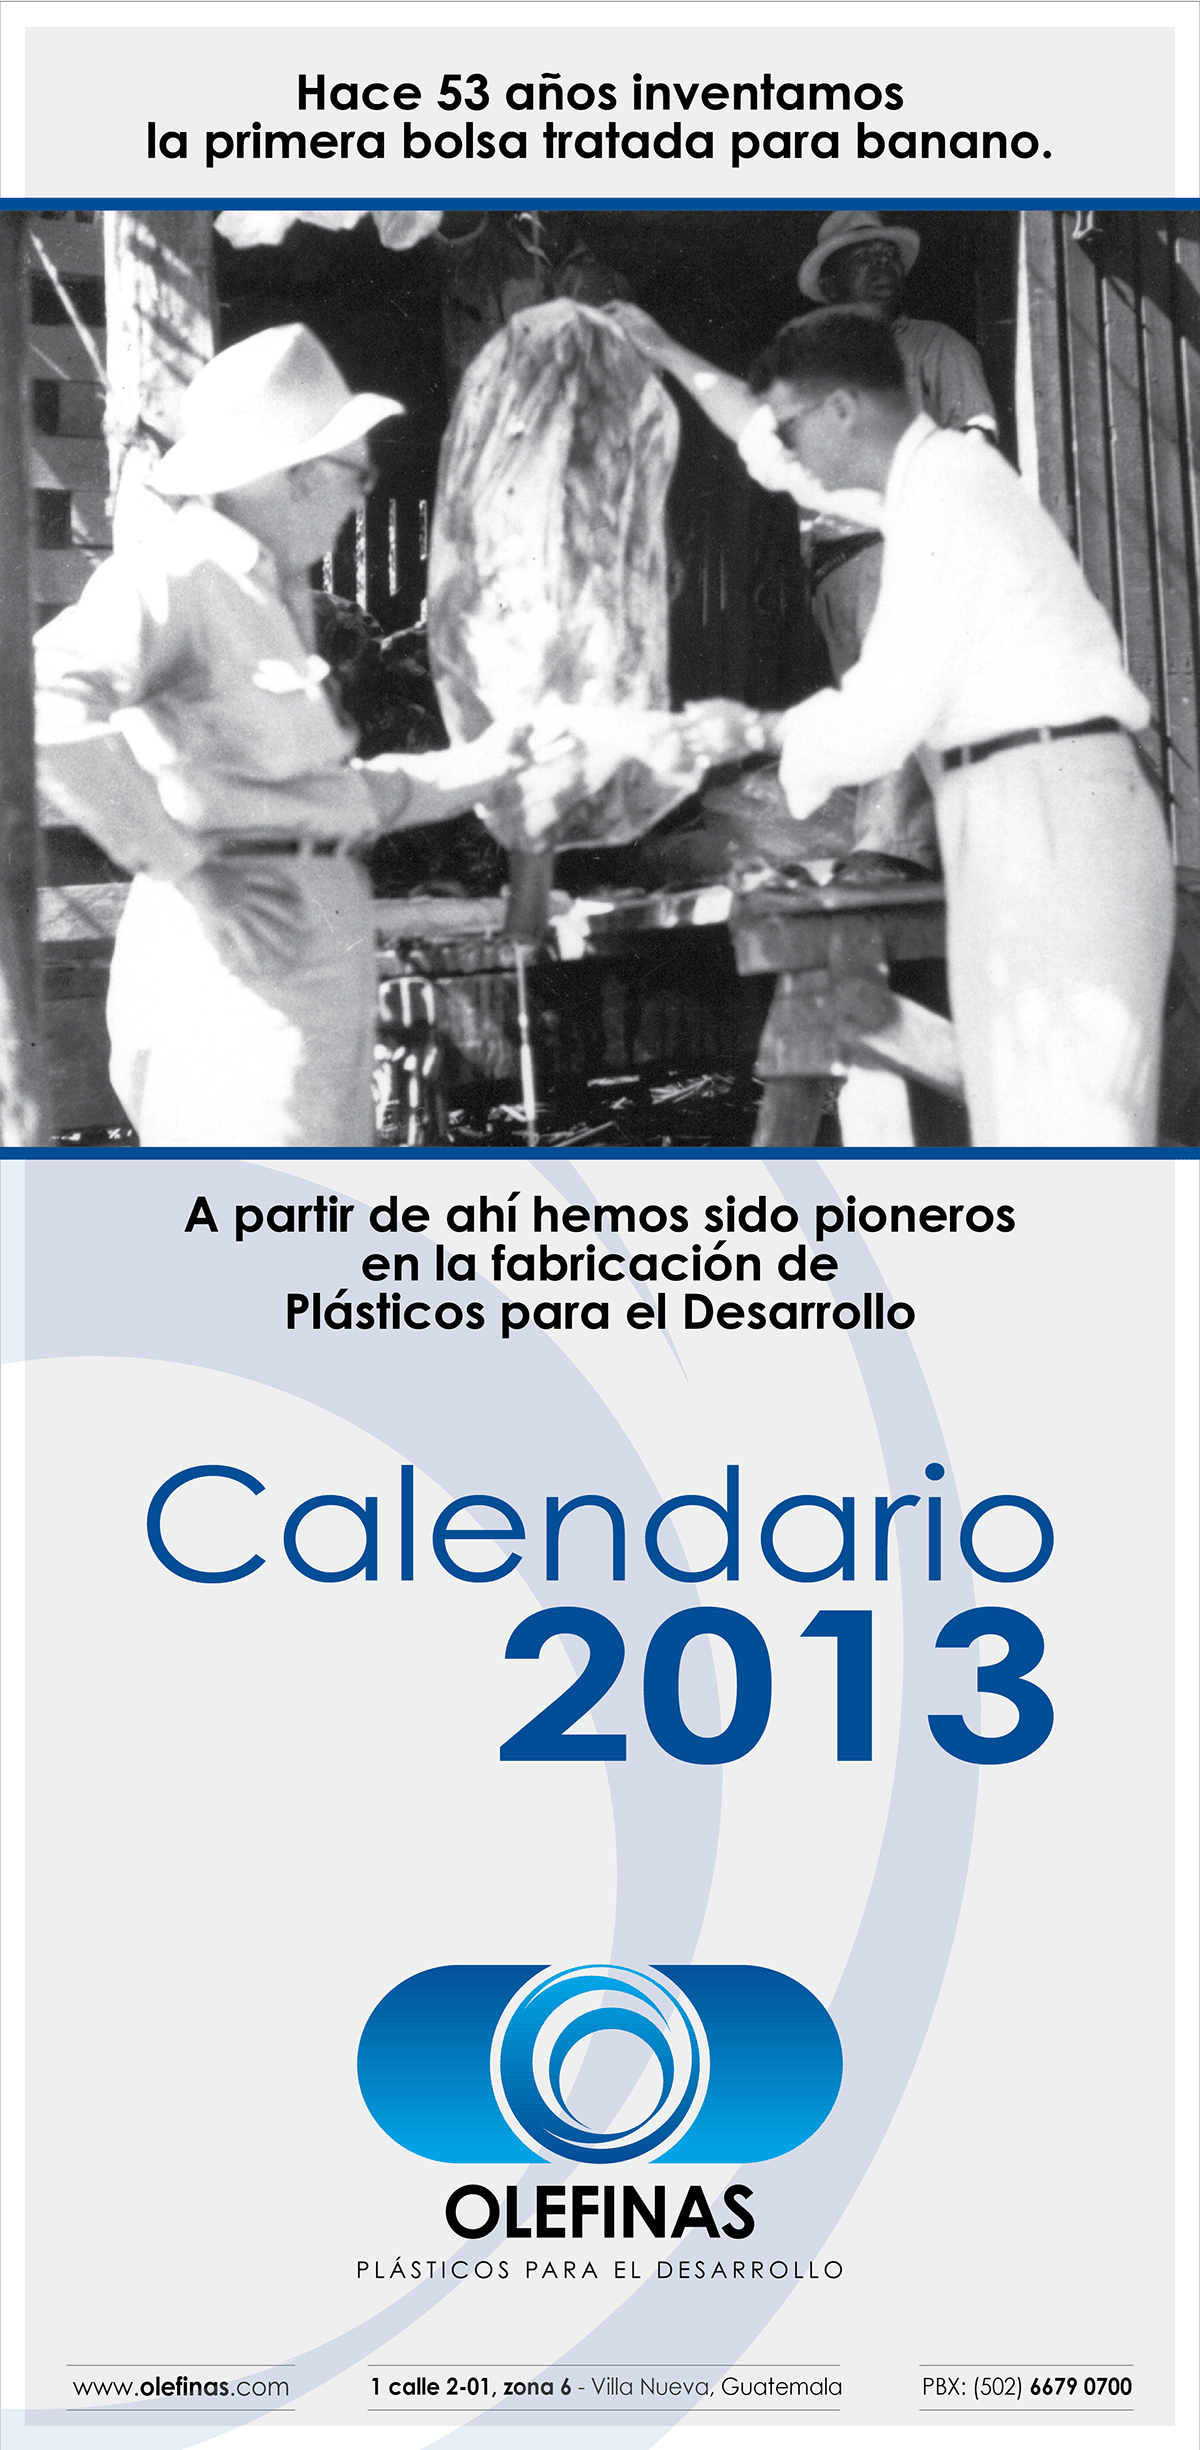 calendar  calendario  Corporative